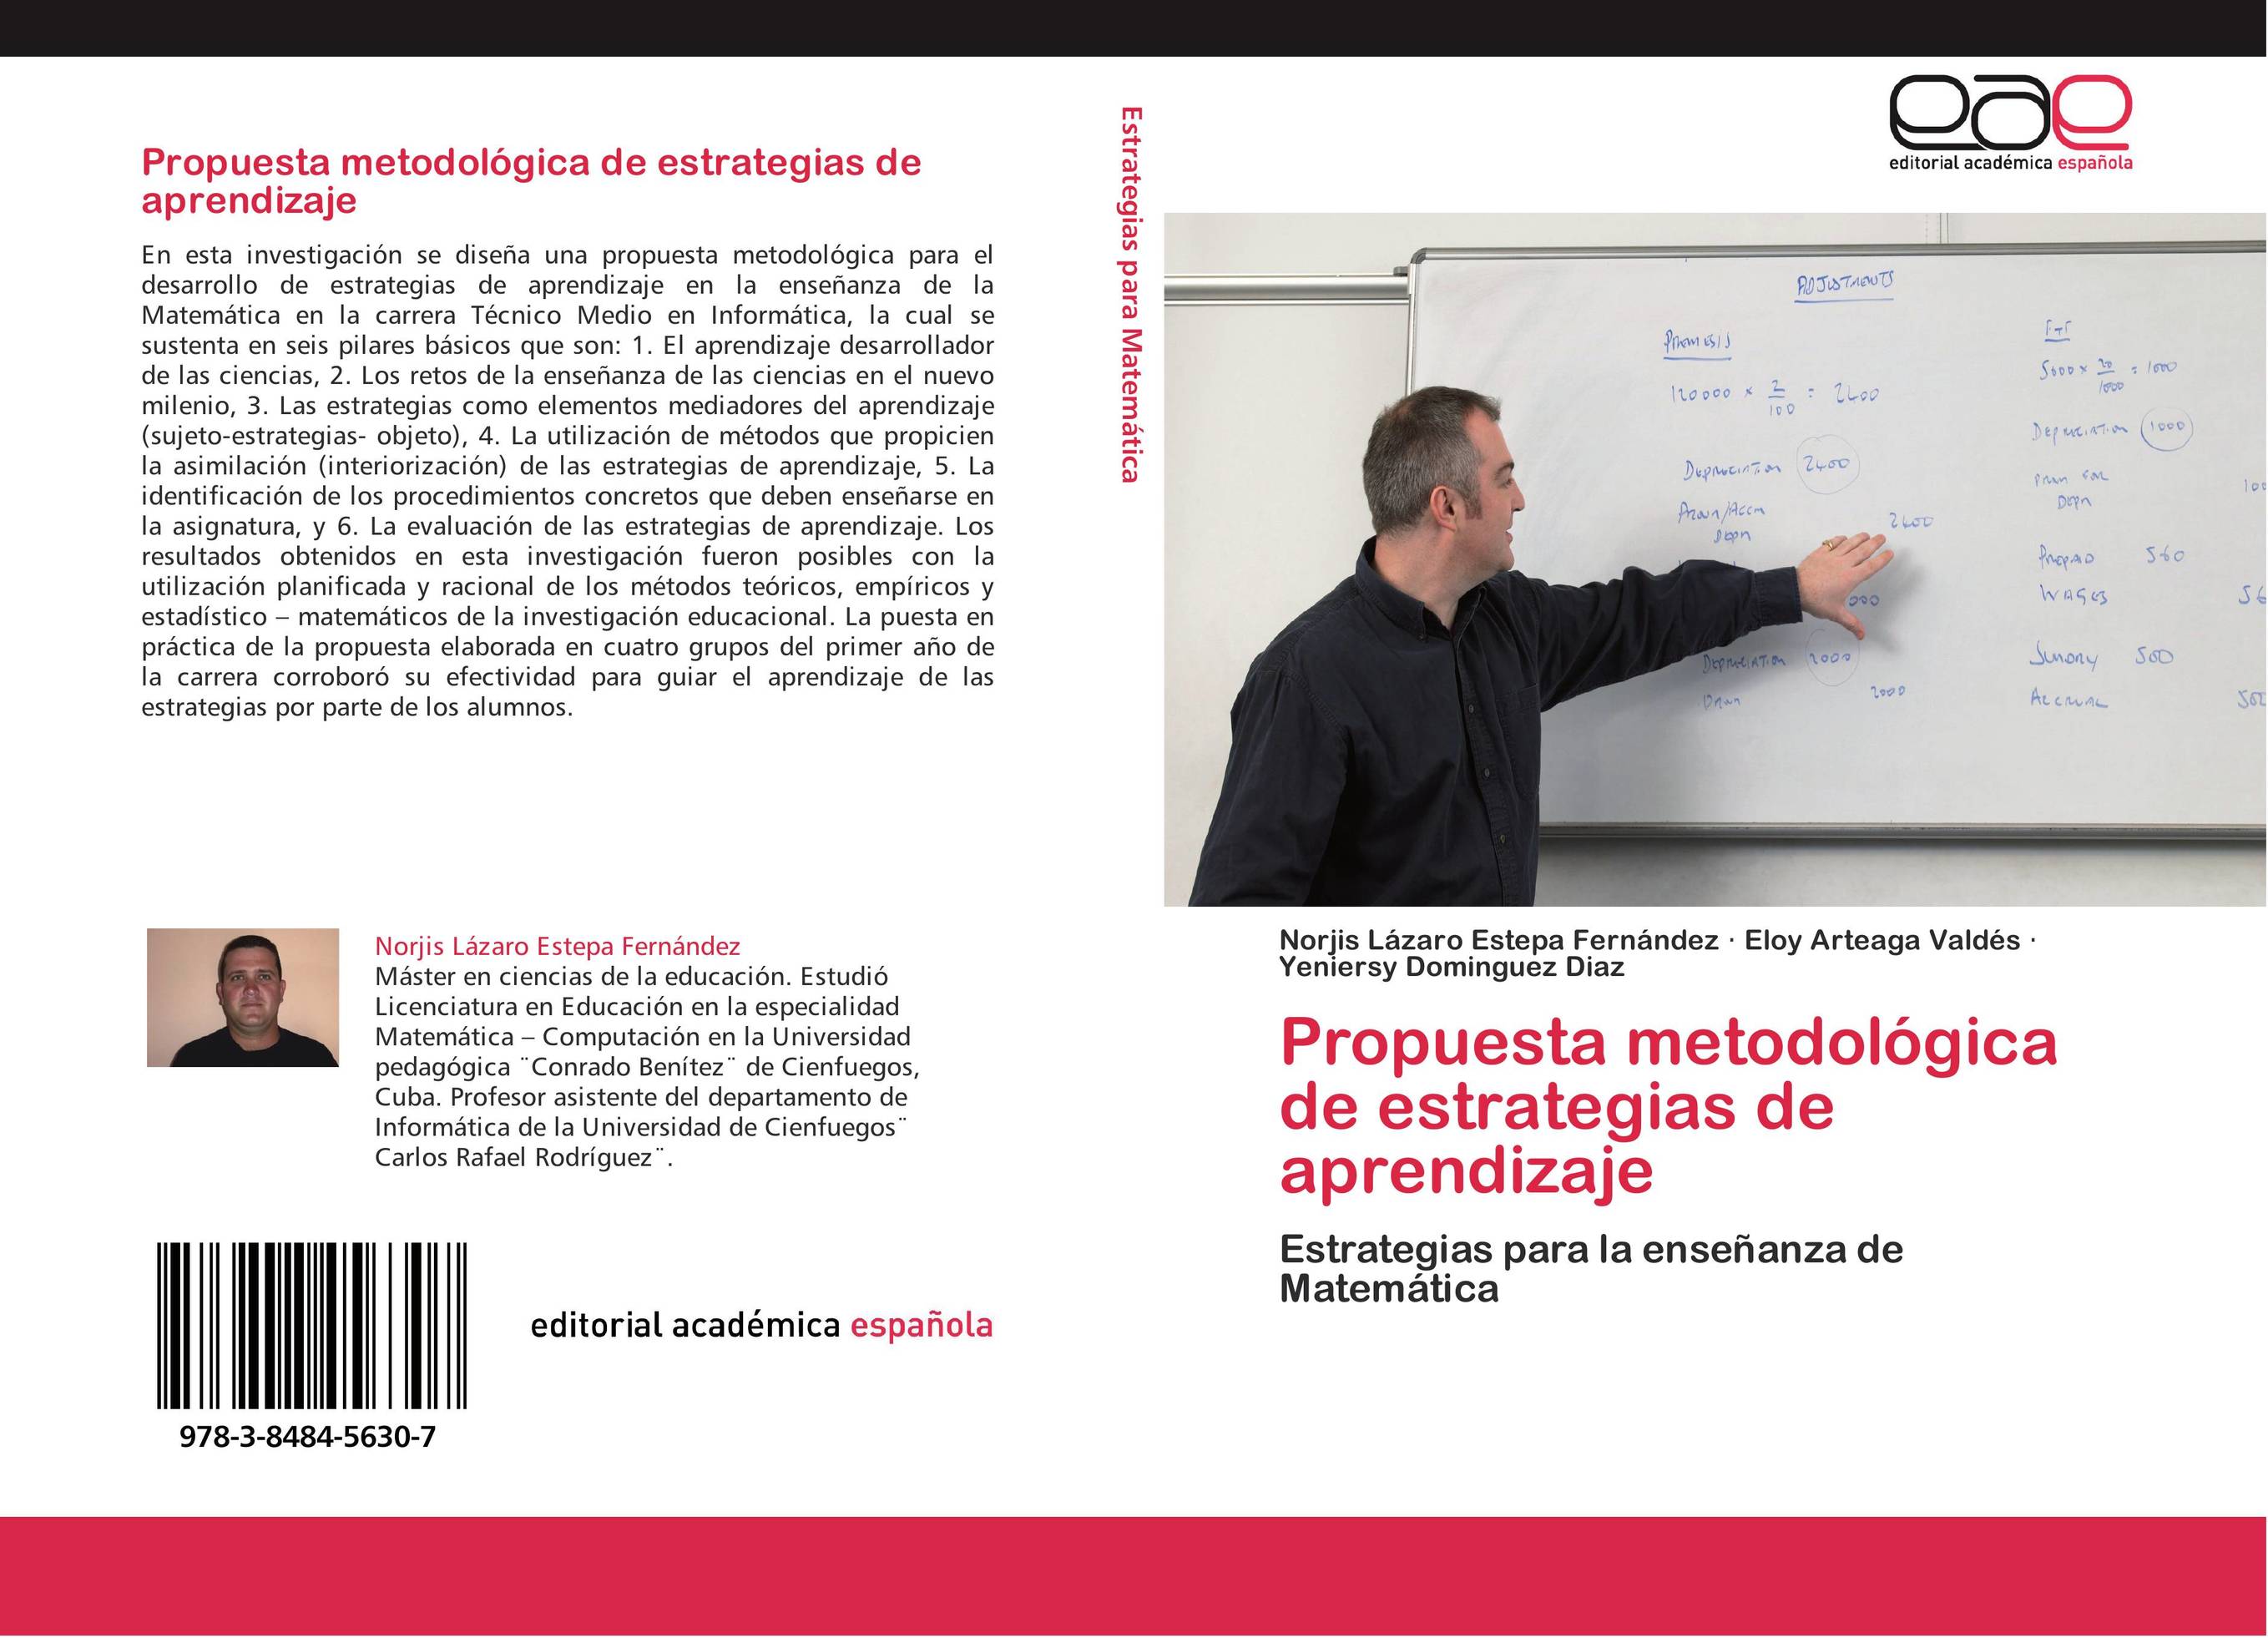 Propuesta metodológica de estrategias de aprendizaje